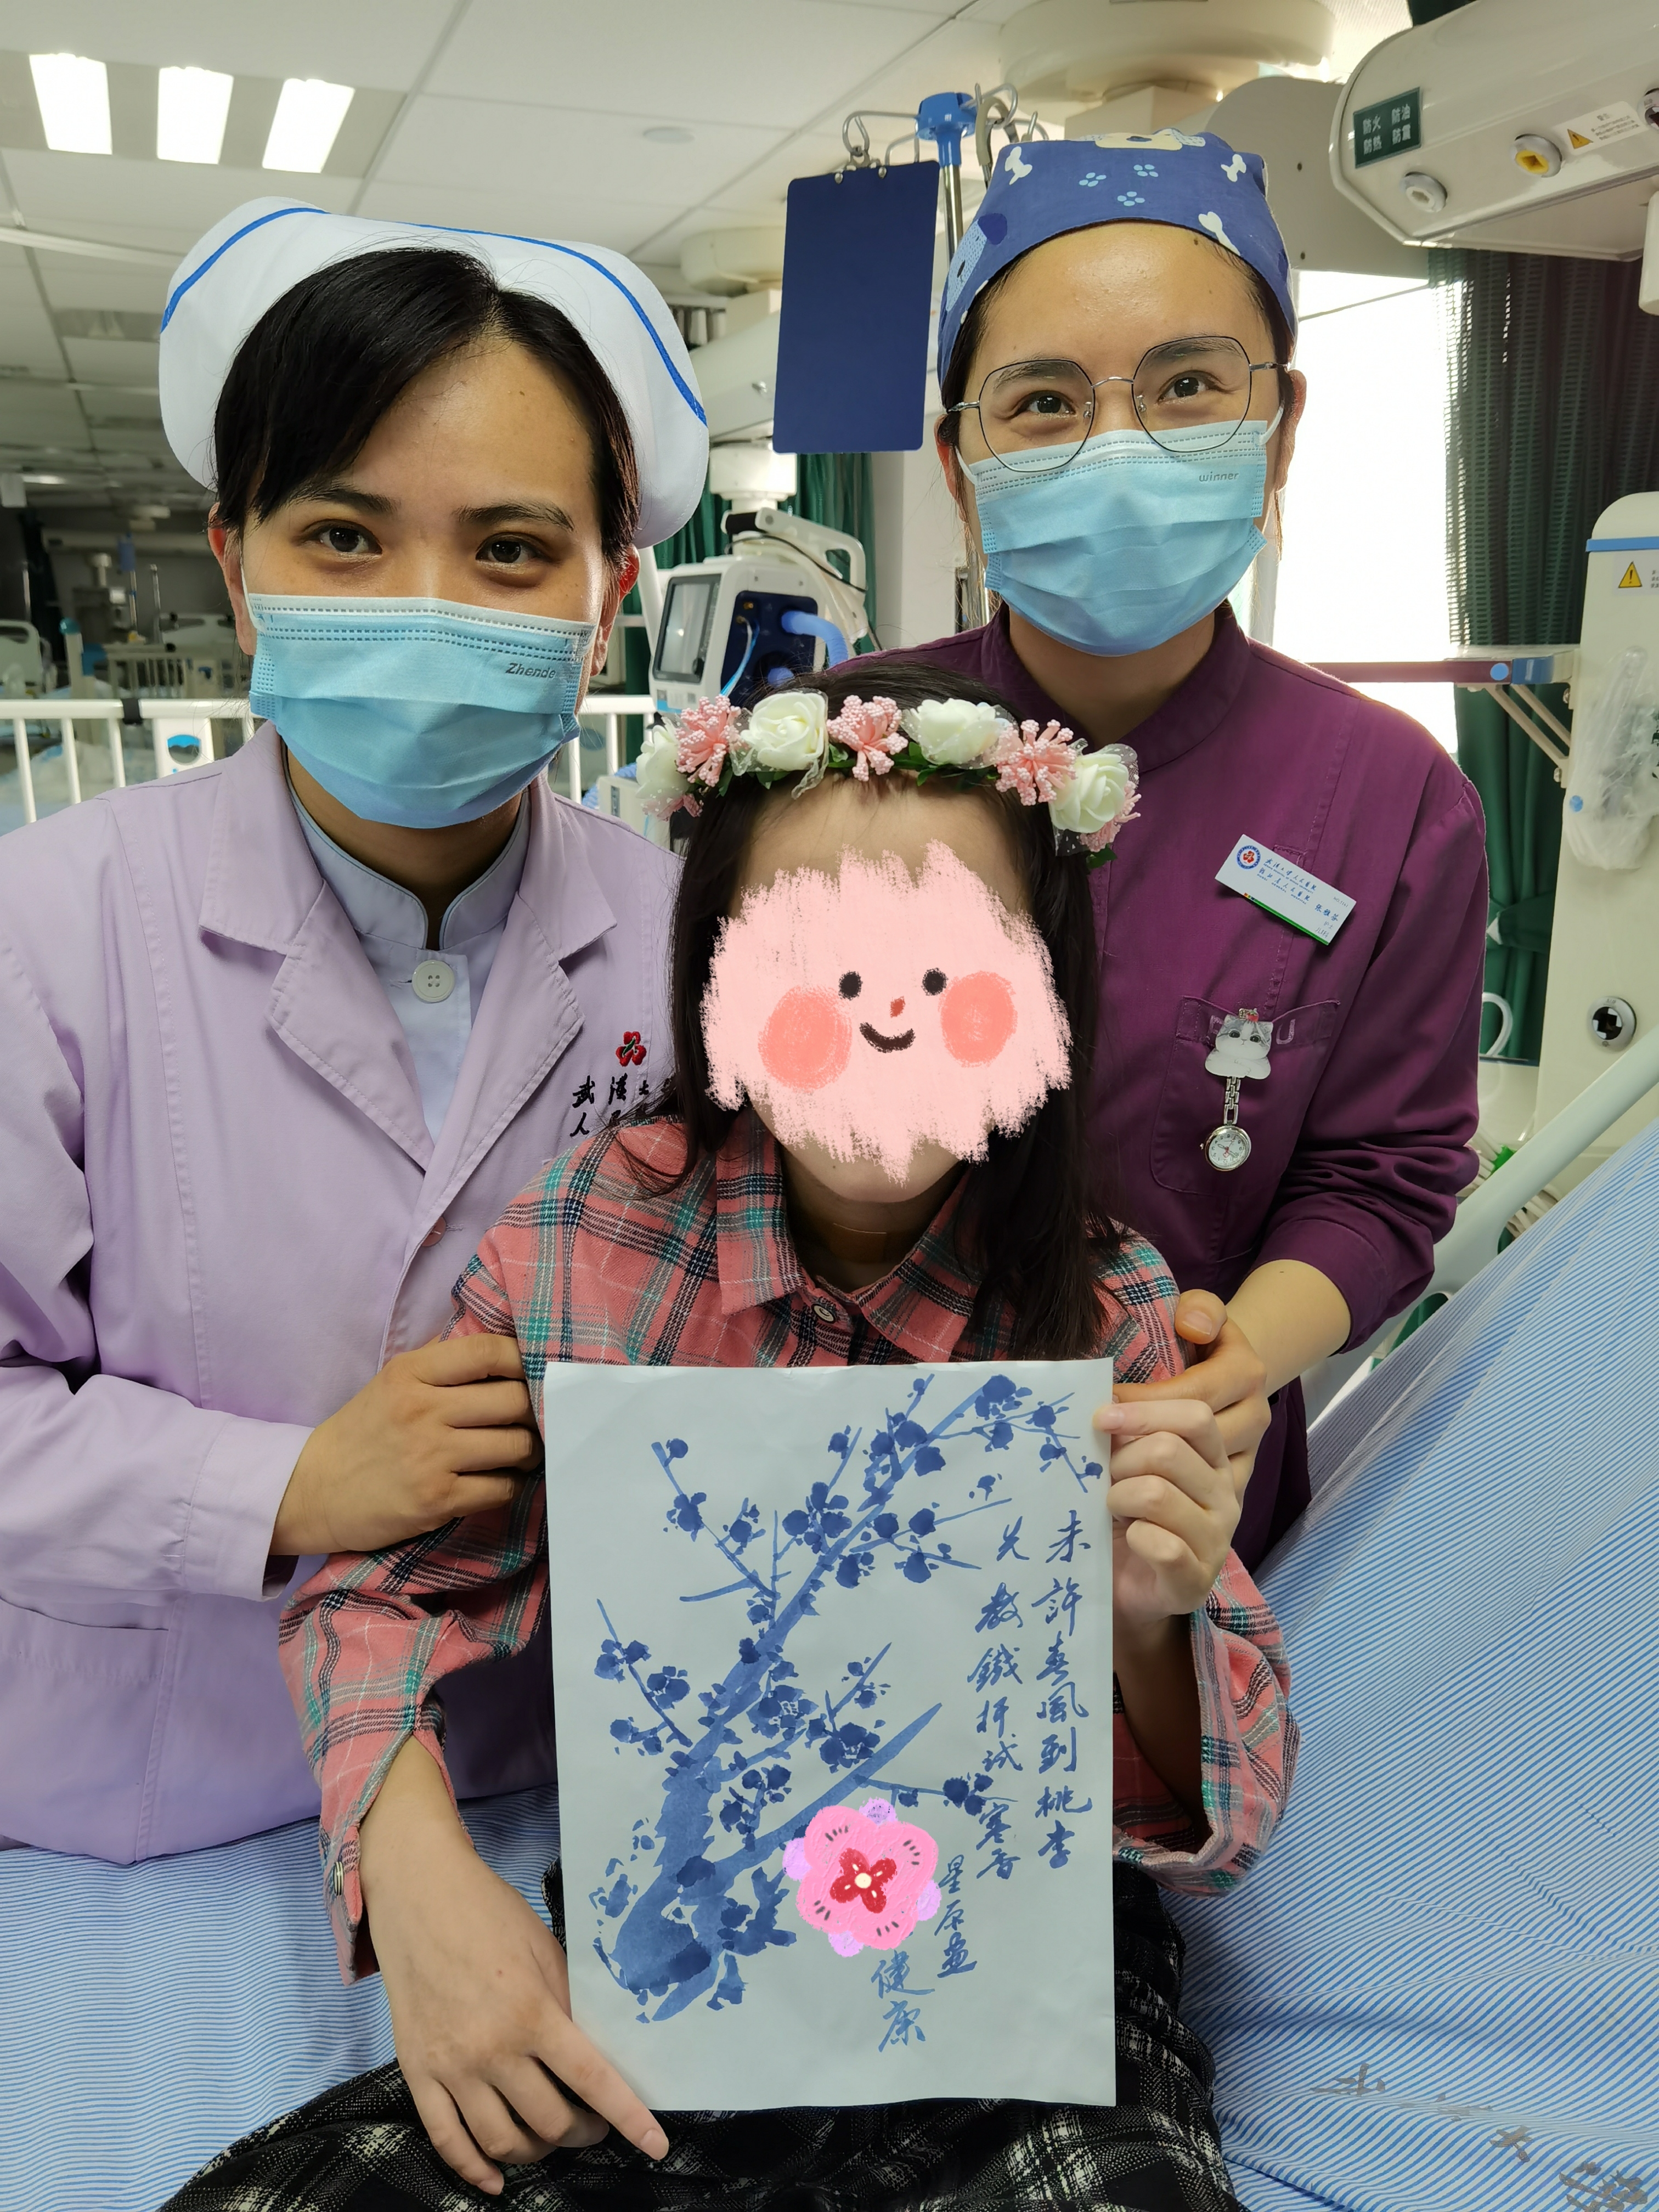 10 岁女童一夜之间高位截瘫，武汉大学人民医院 MDT 团队救治 2 月终重新站立